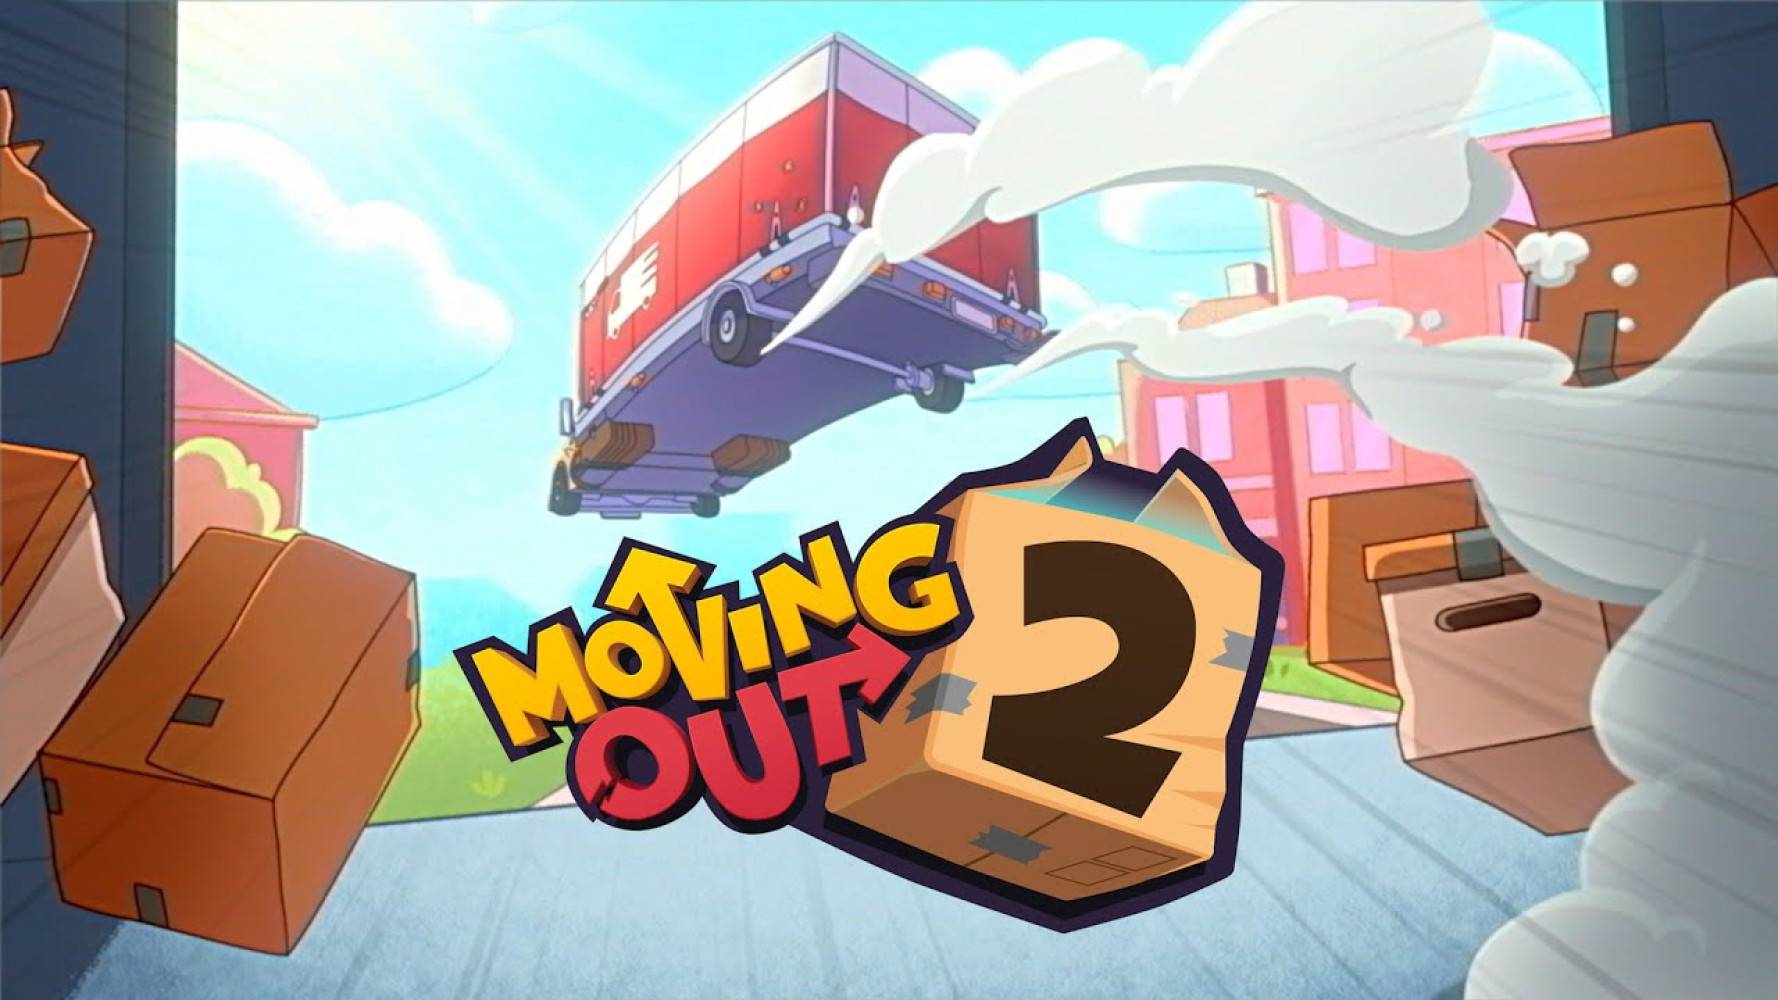 模拟搬家游戏续作《Moving Out 2》发售日期公布，确定于 8 月 16 日正式上市！